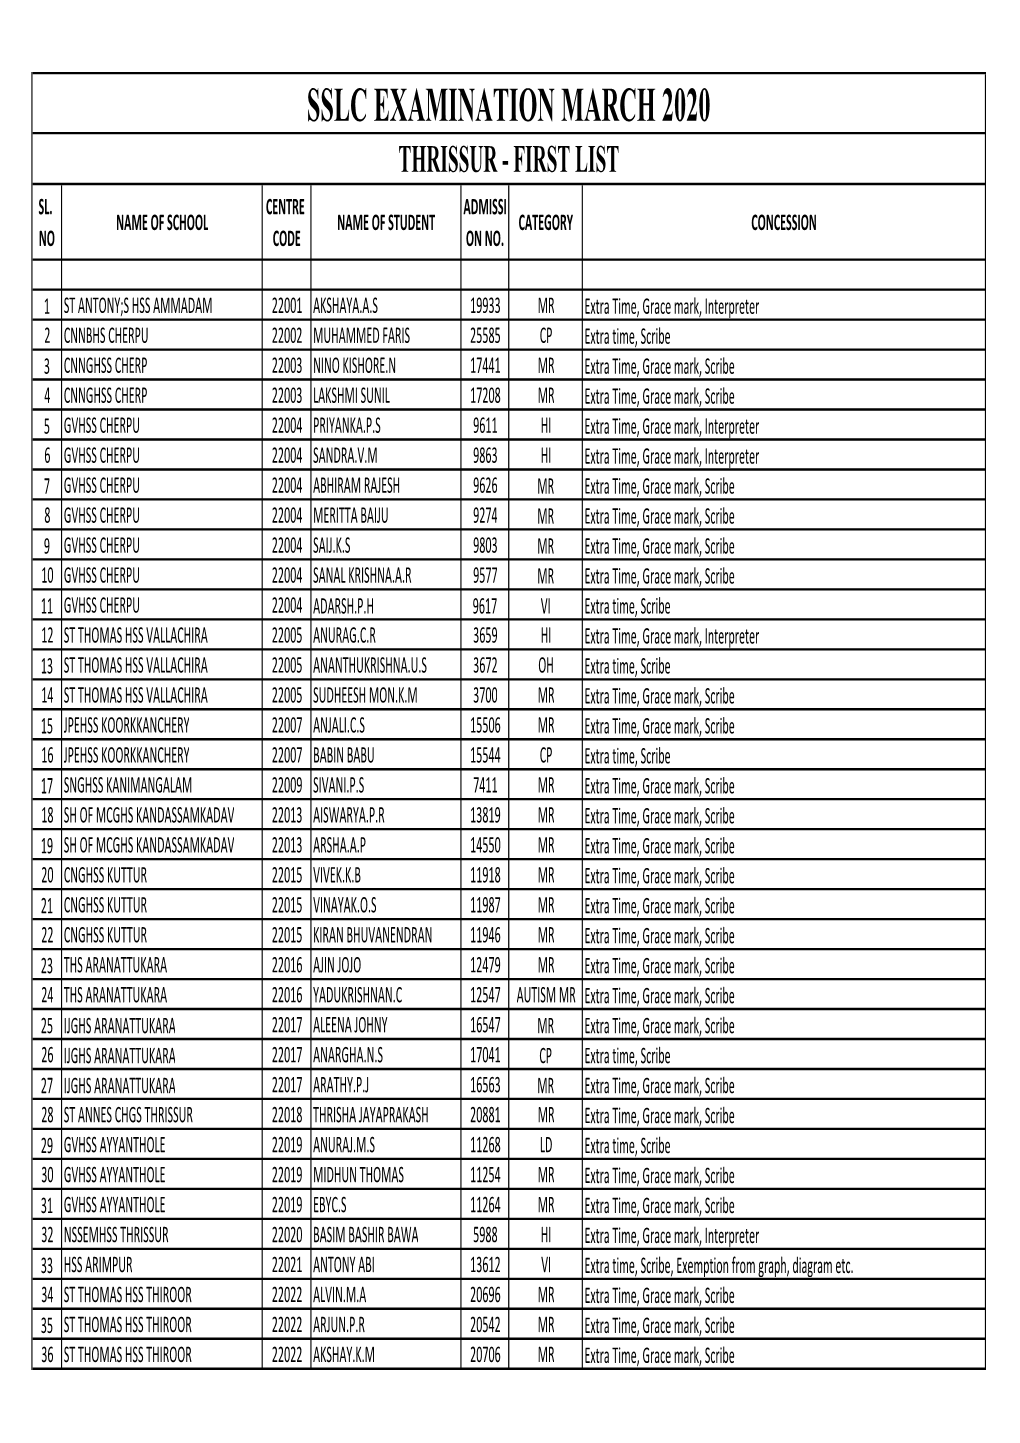 23 SSLC First List Thrissur